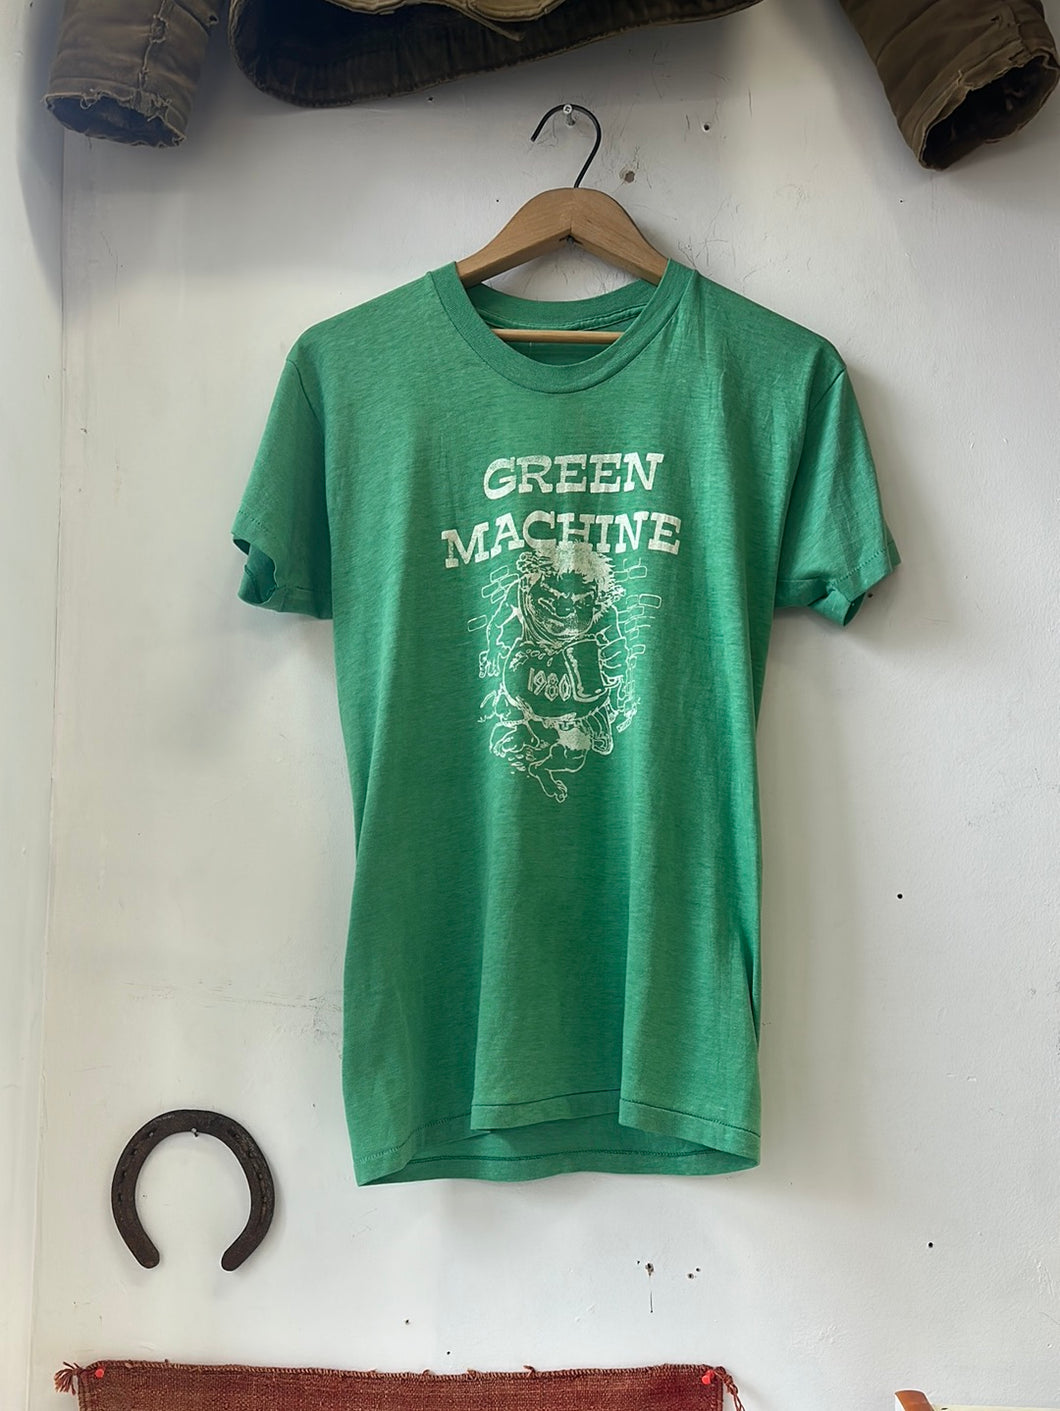 1980s “Green Machine” Tee